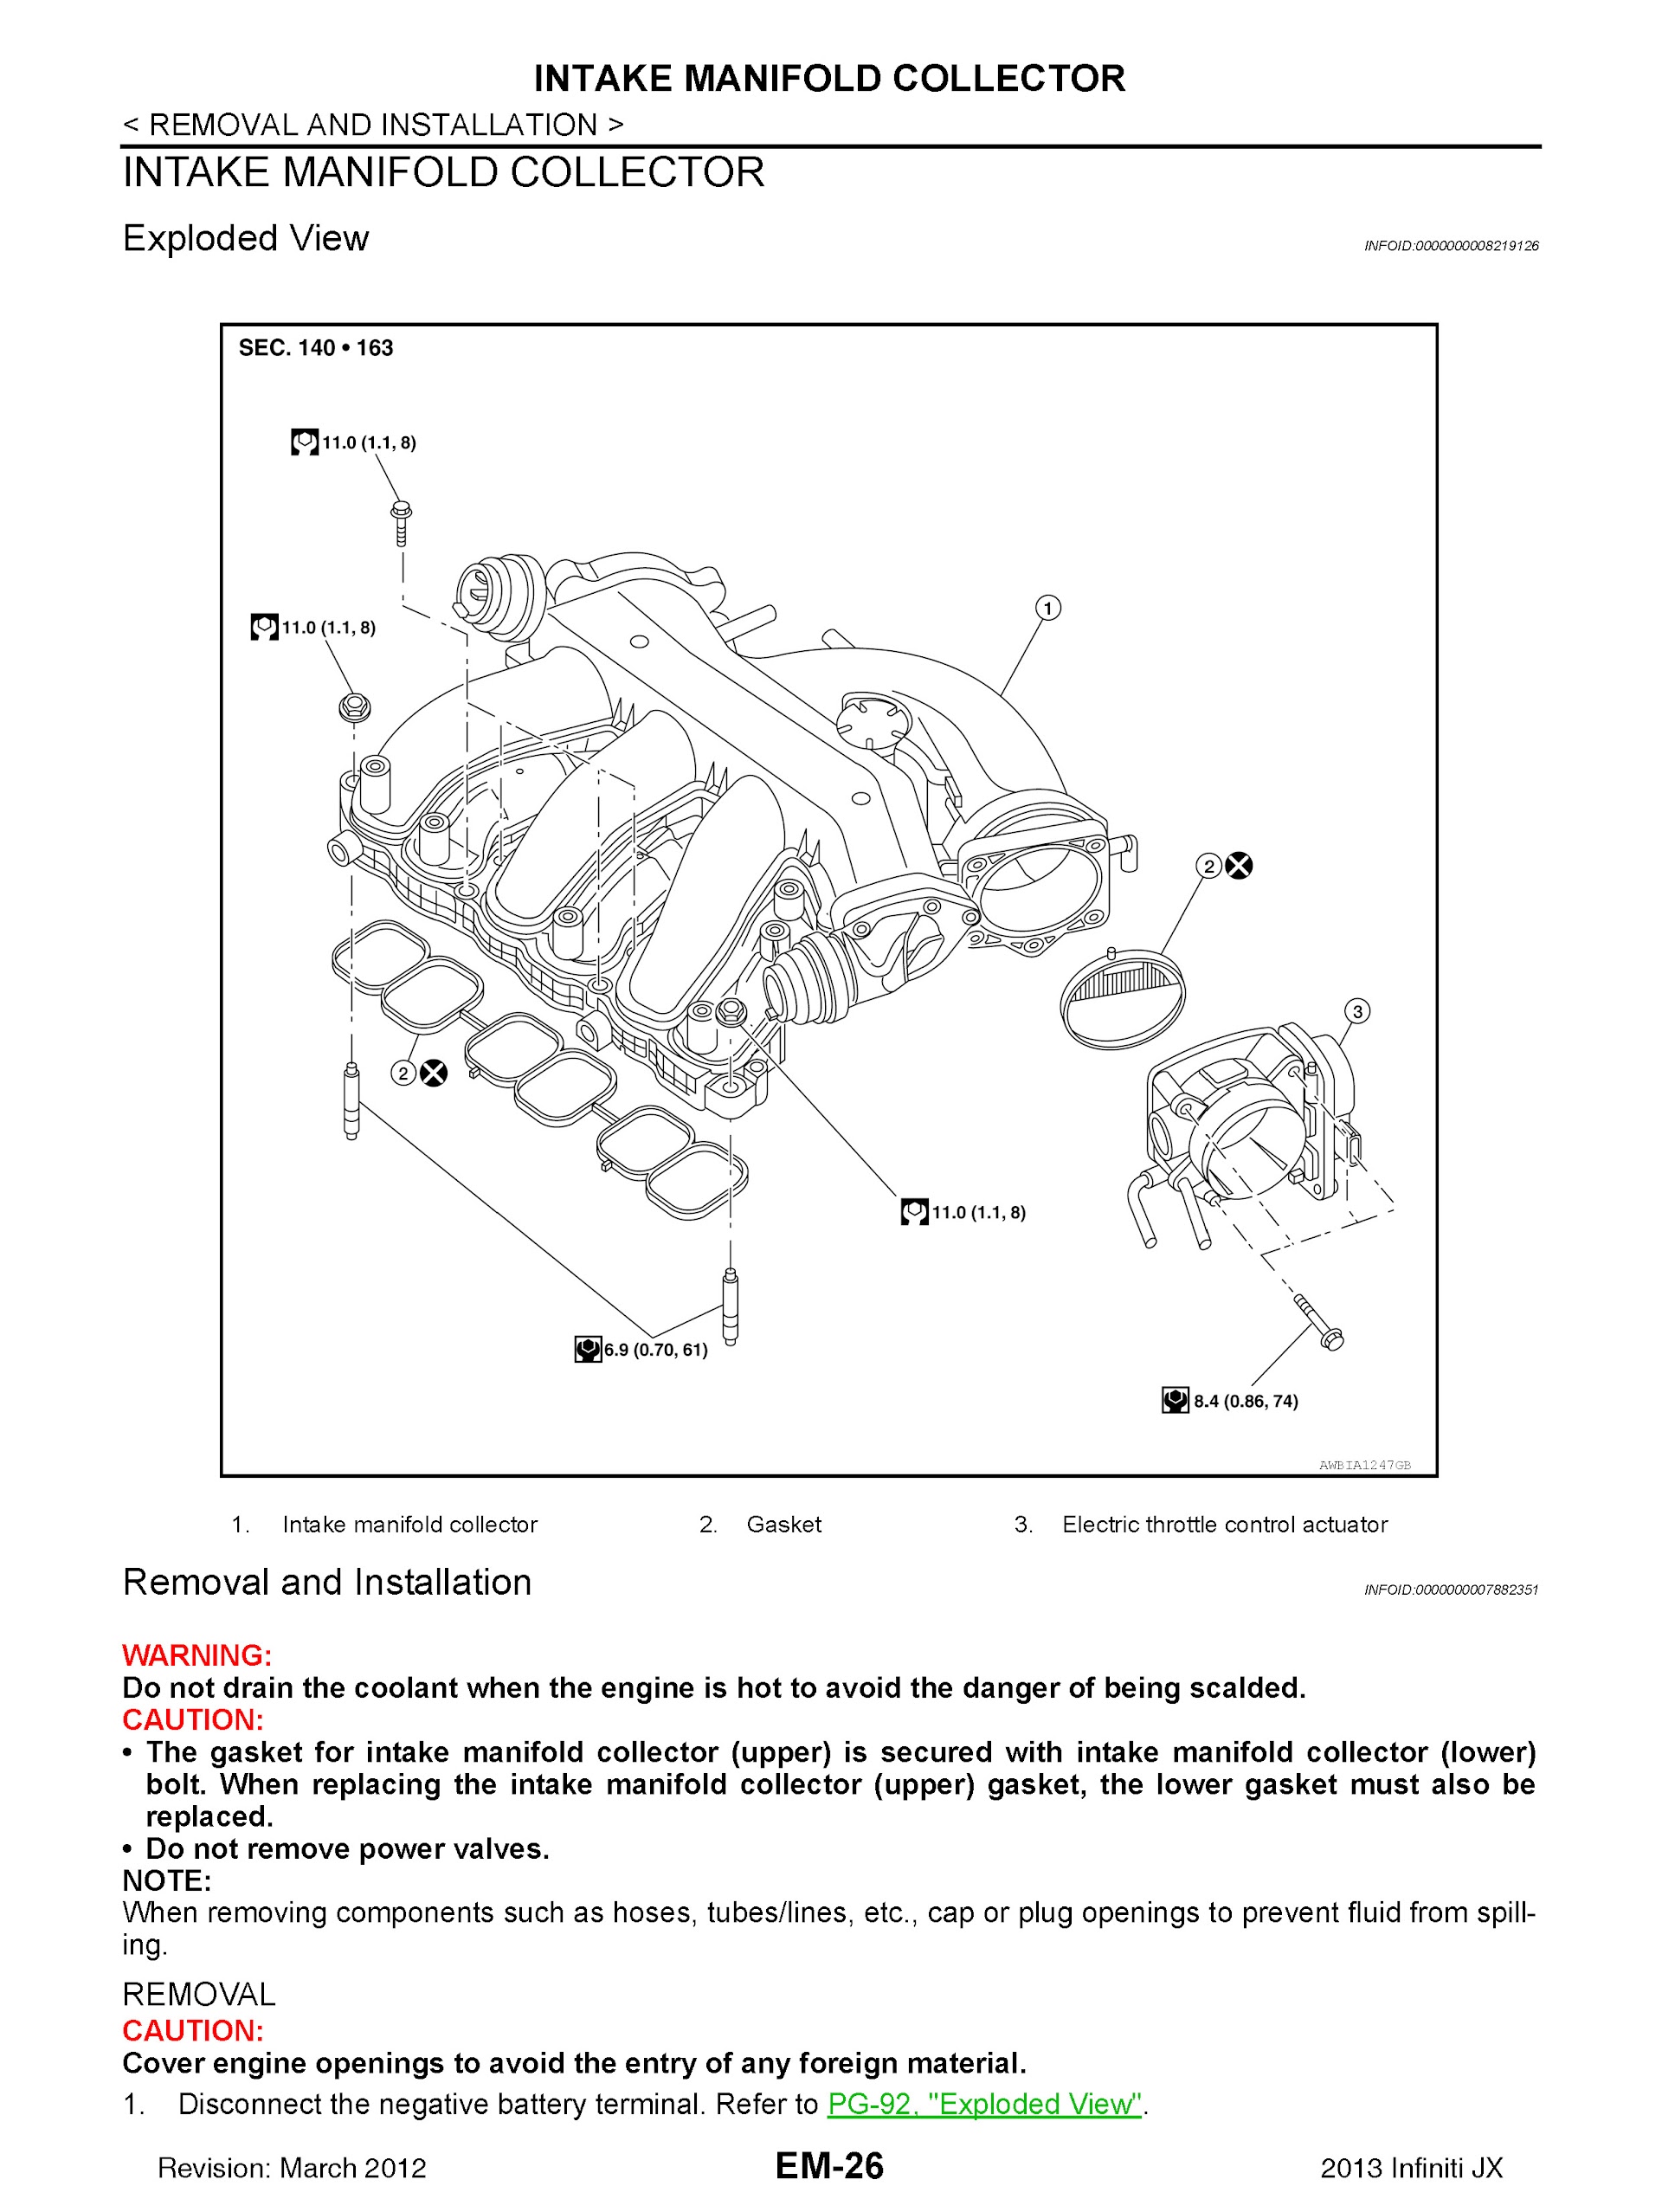 2011-2013 Infiniti QX60 Repair Manual (JX) L50 Series, Intake Manifold Connector